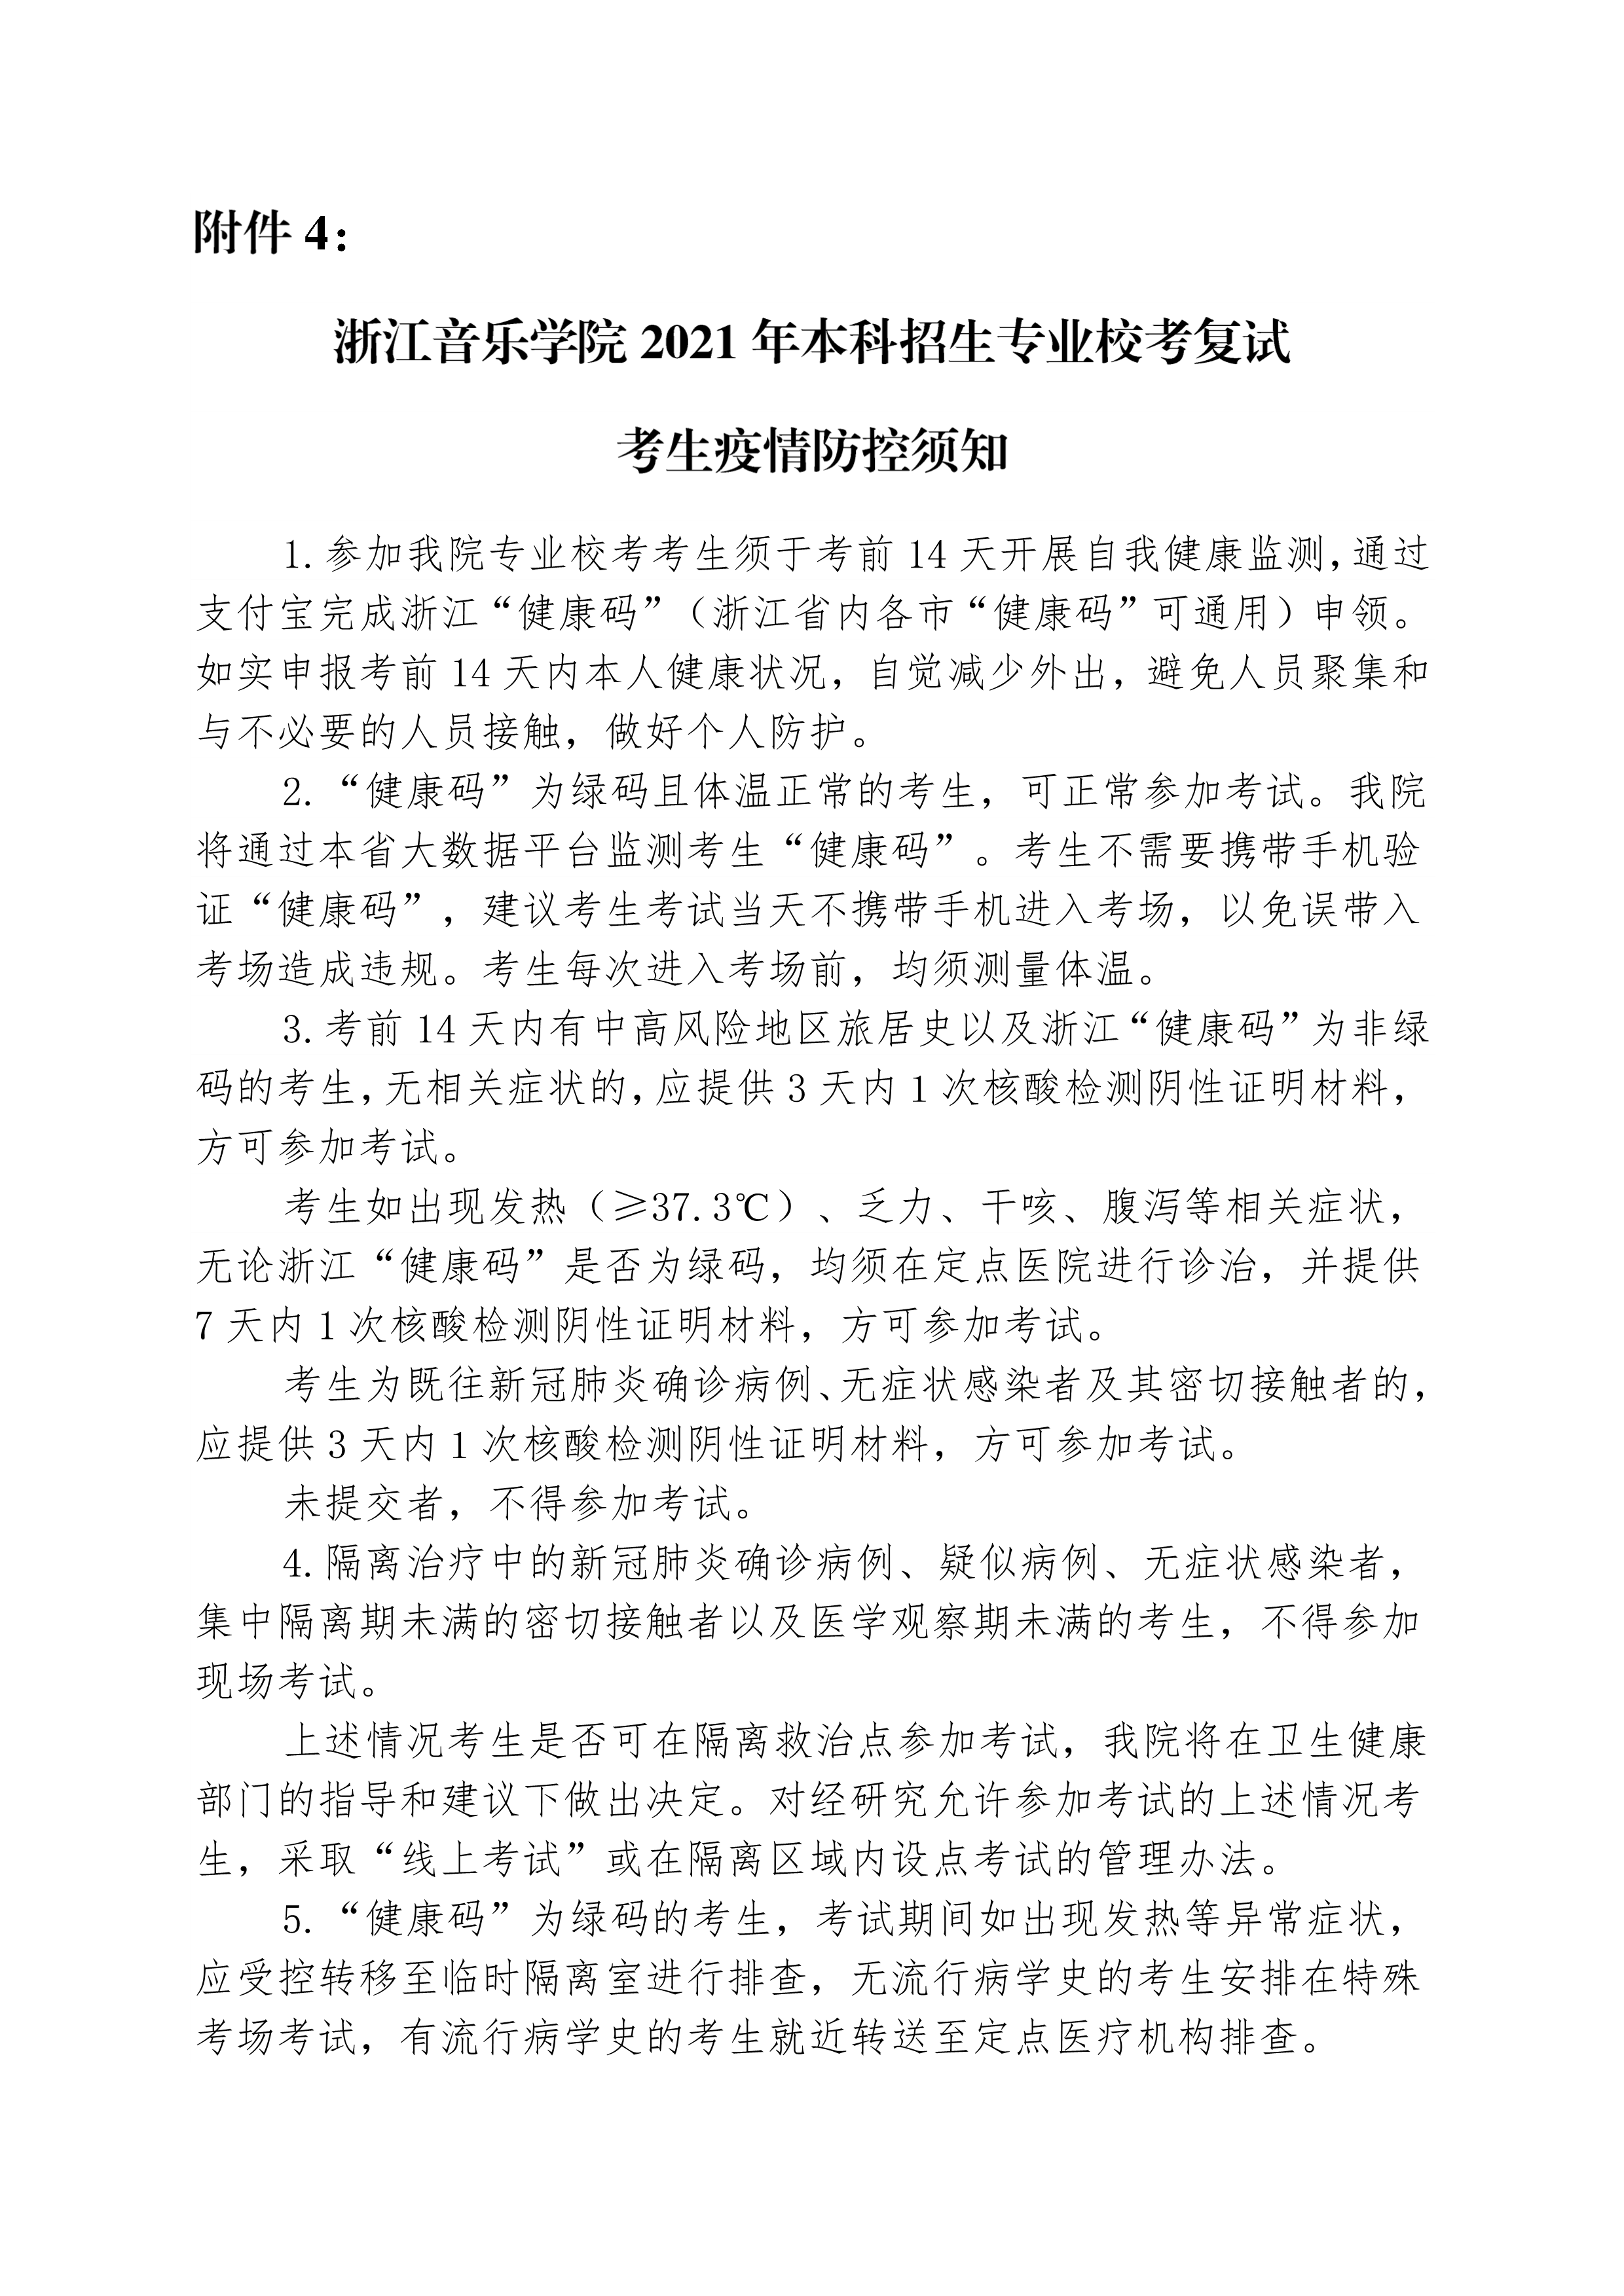 附件4：浙江音乐学院2021年本科招生专业校考复试考生疫情防控须知 _1.png